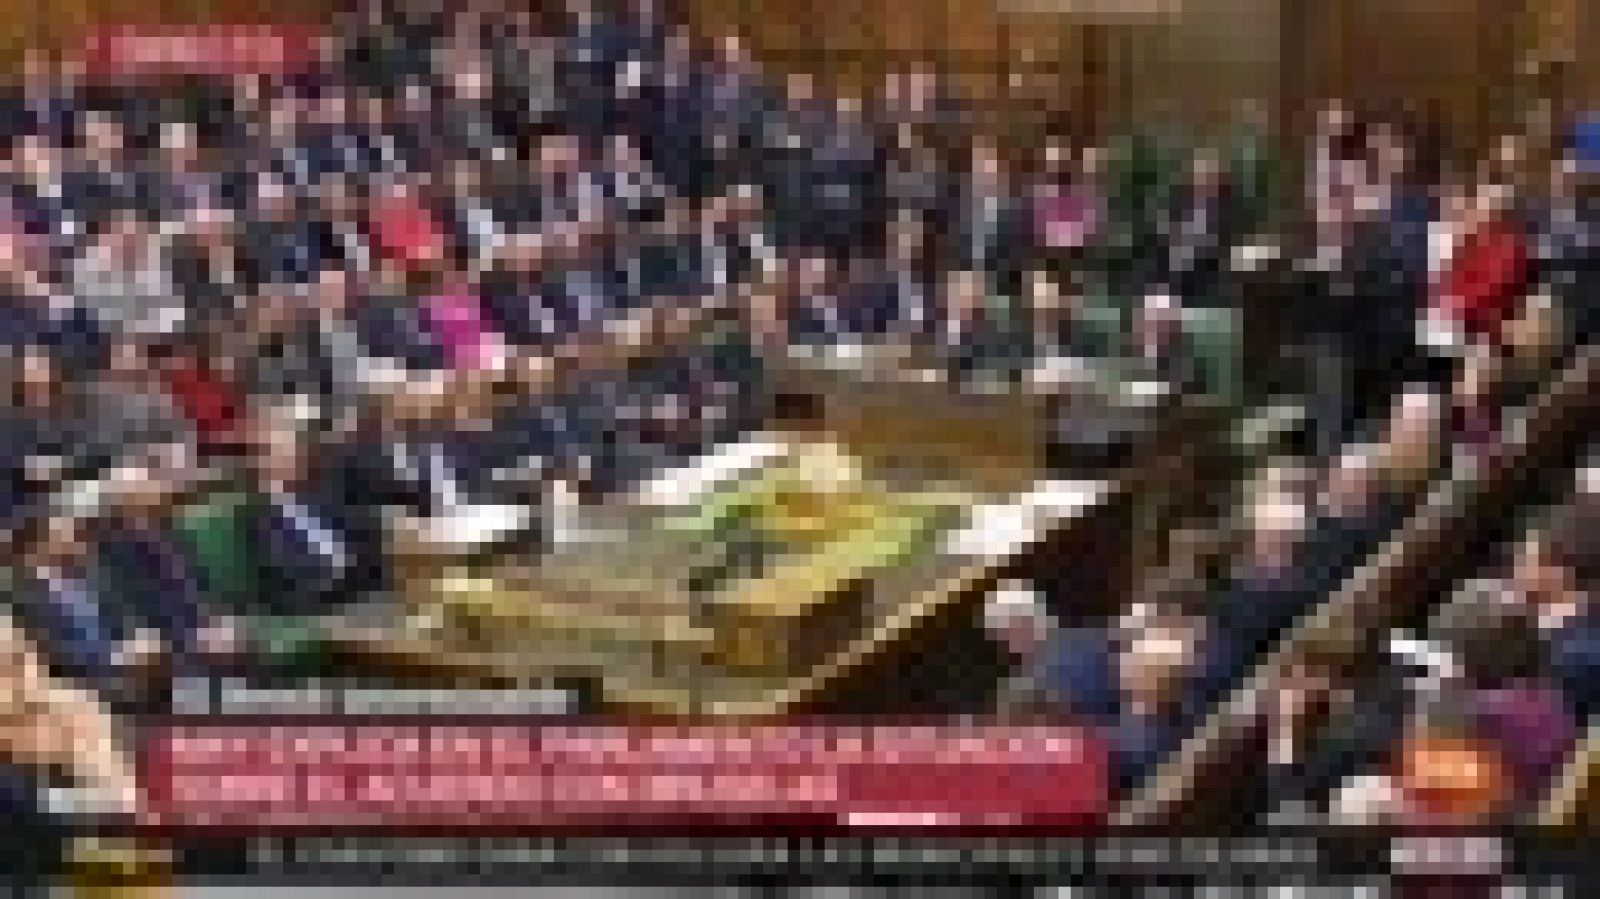 May, al Parlamento: "Sean honestos si quieren un segundo referéndum"